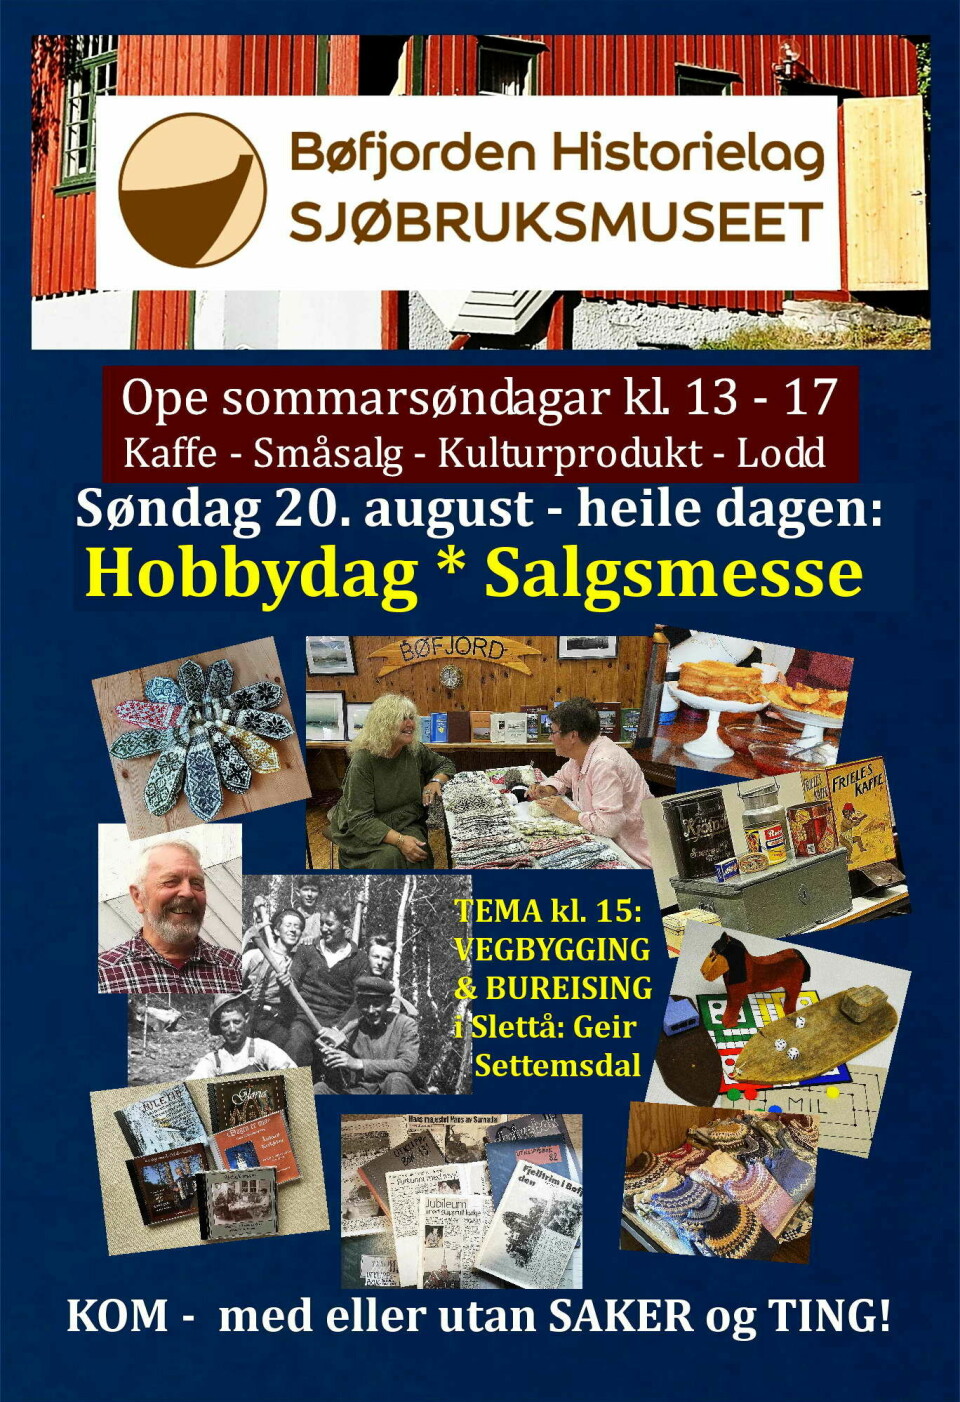 En plakat fra Bøfjorden Historielag Sjøbruksmuseet